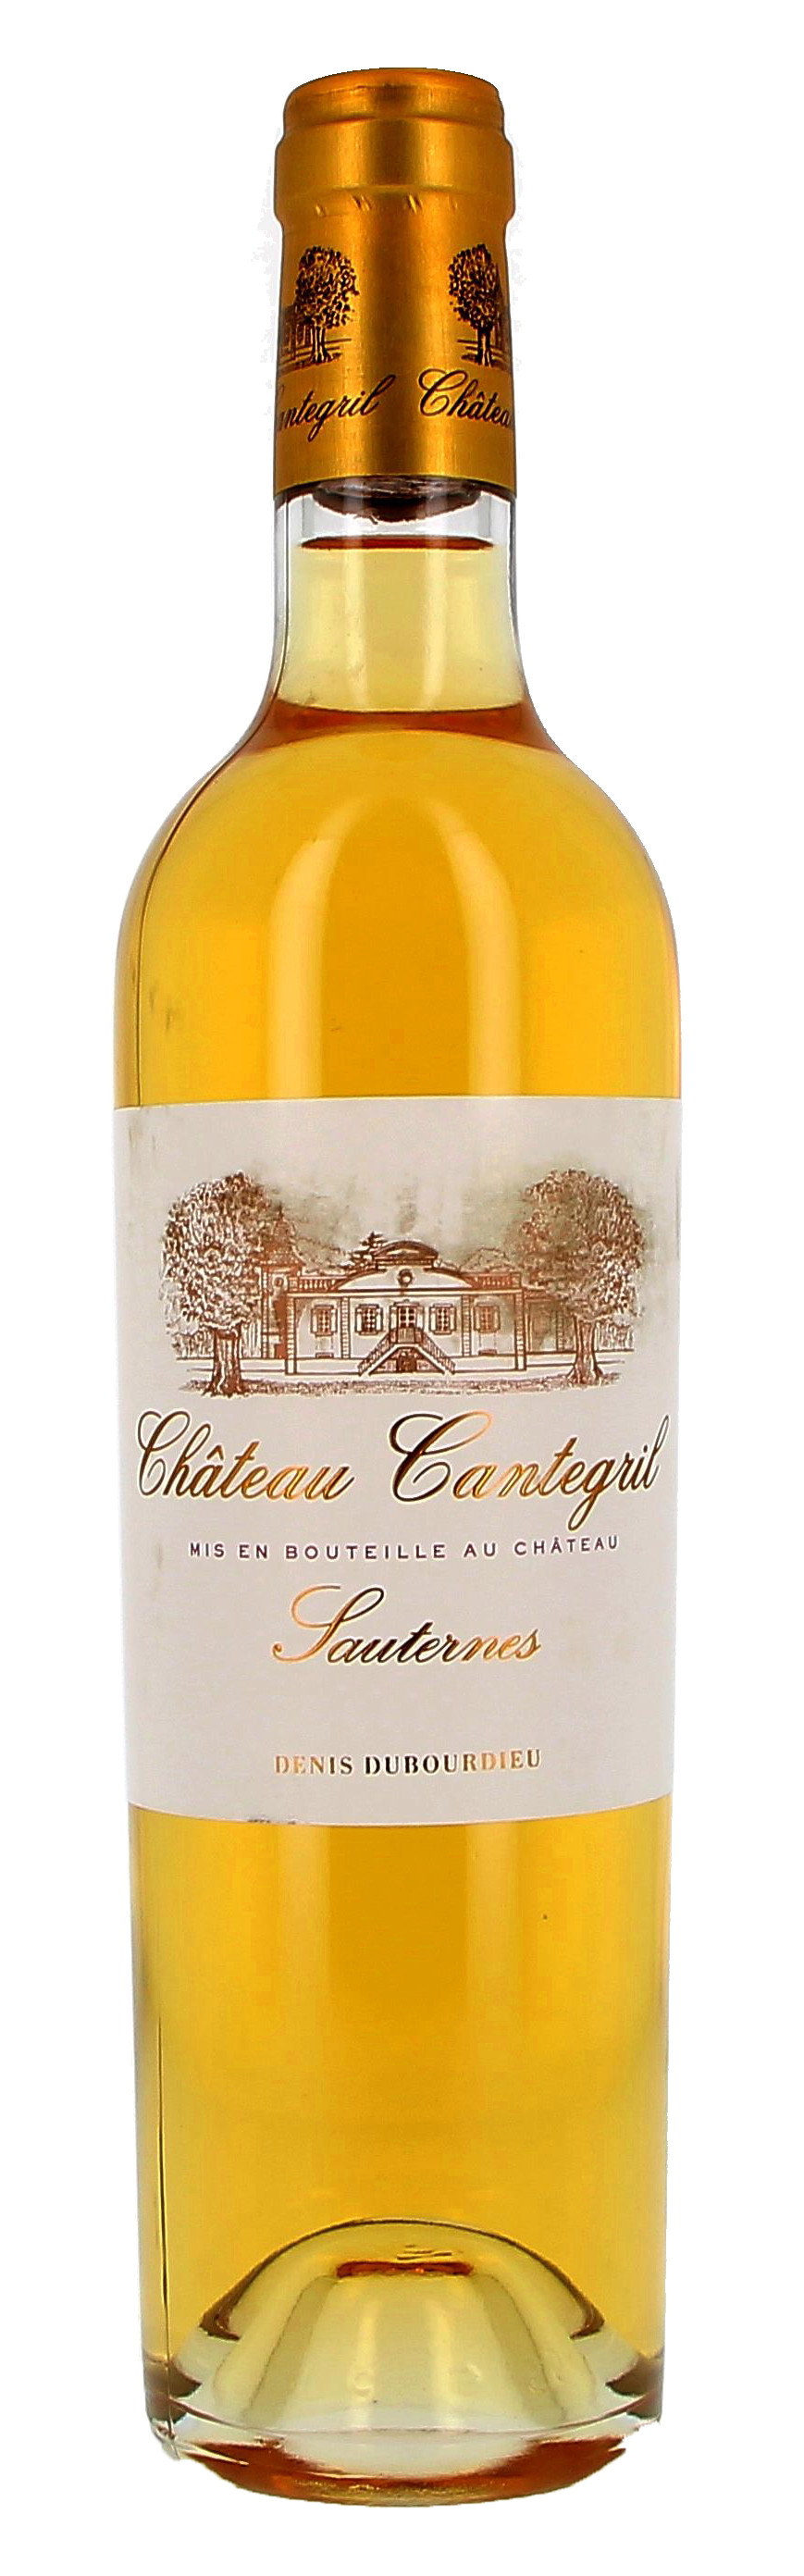 Chateau Cantegril 50cl 2014 Sauternes (Wijnen)